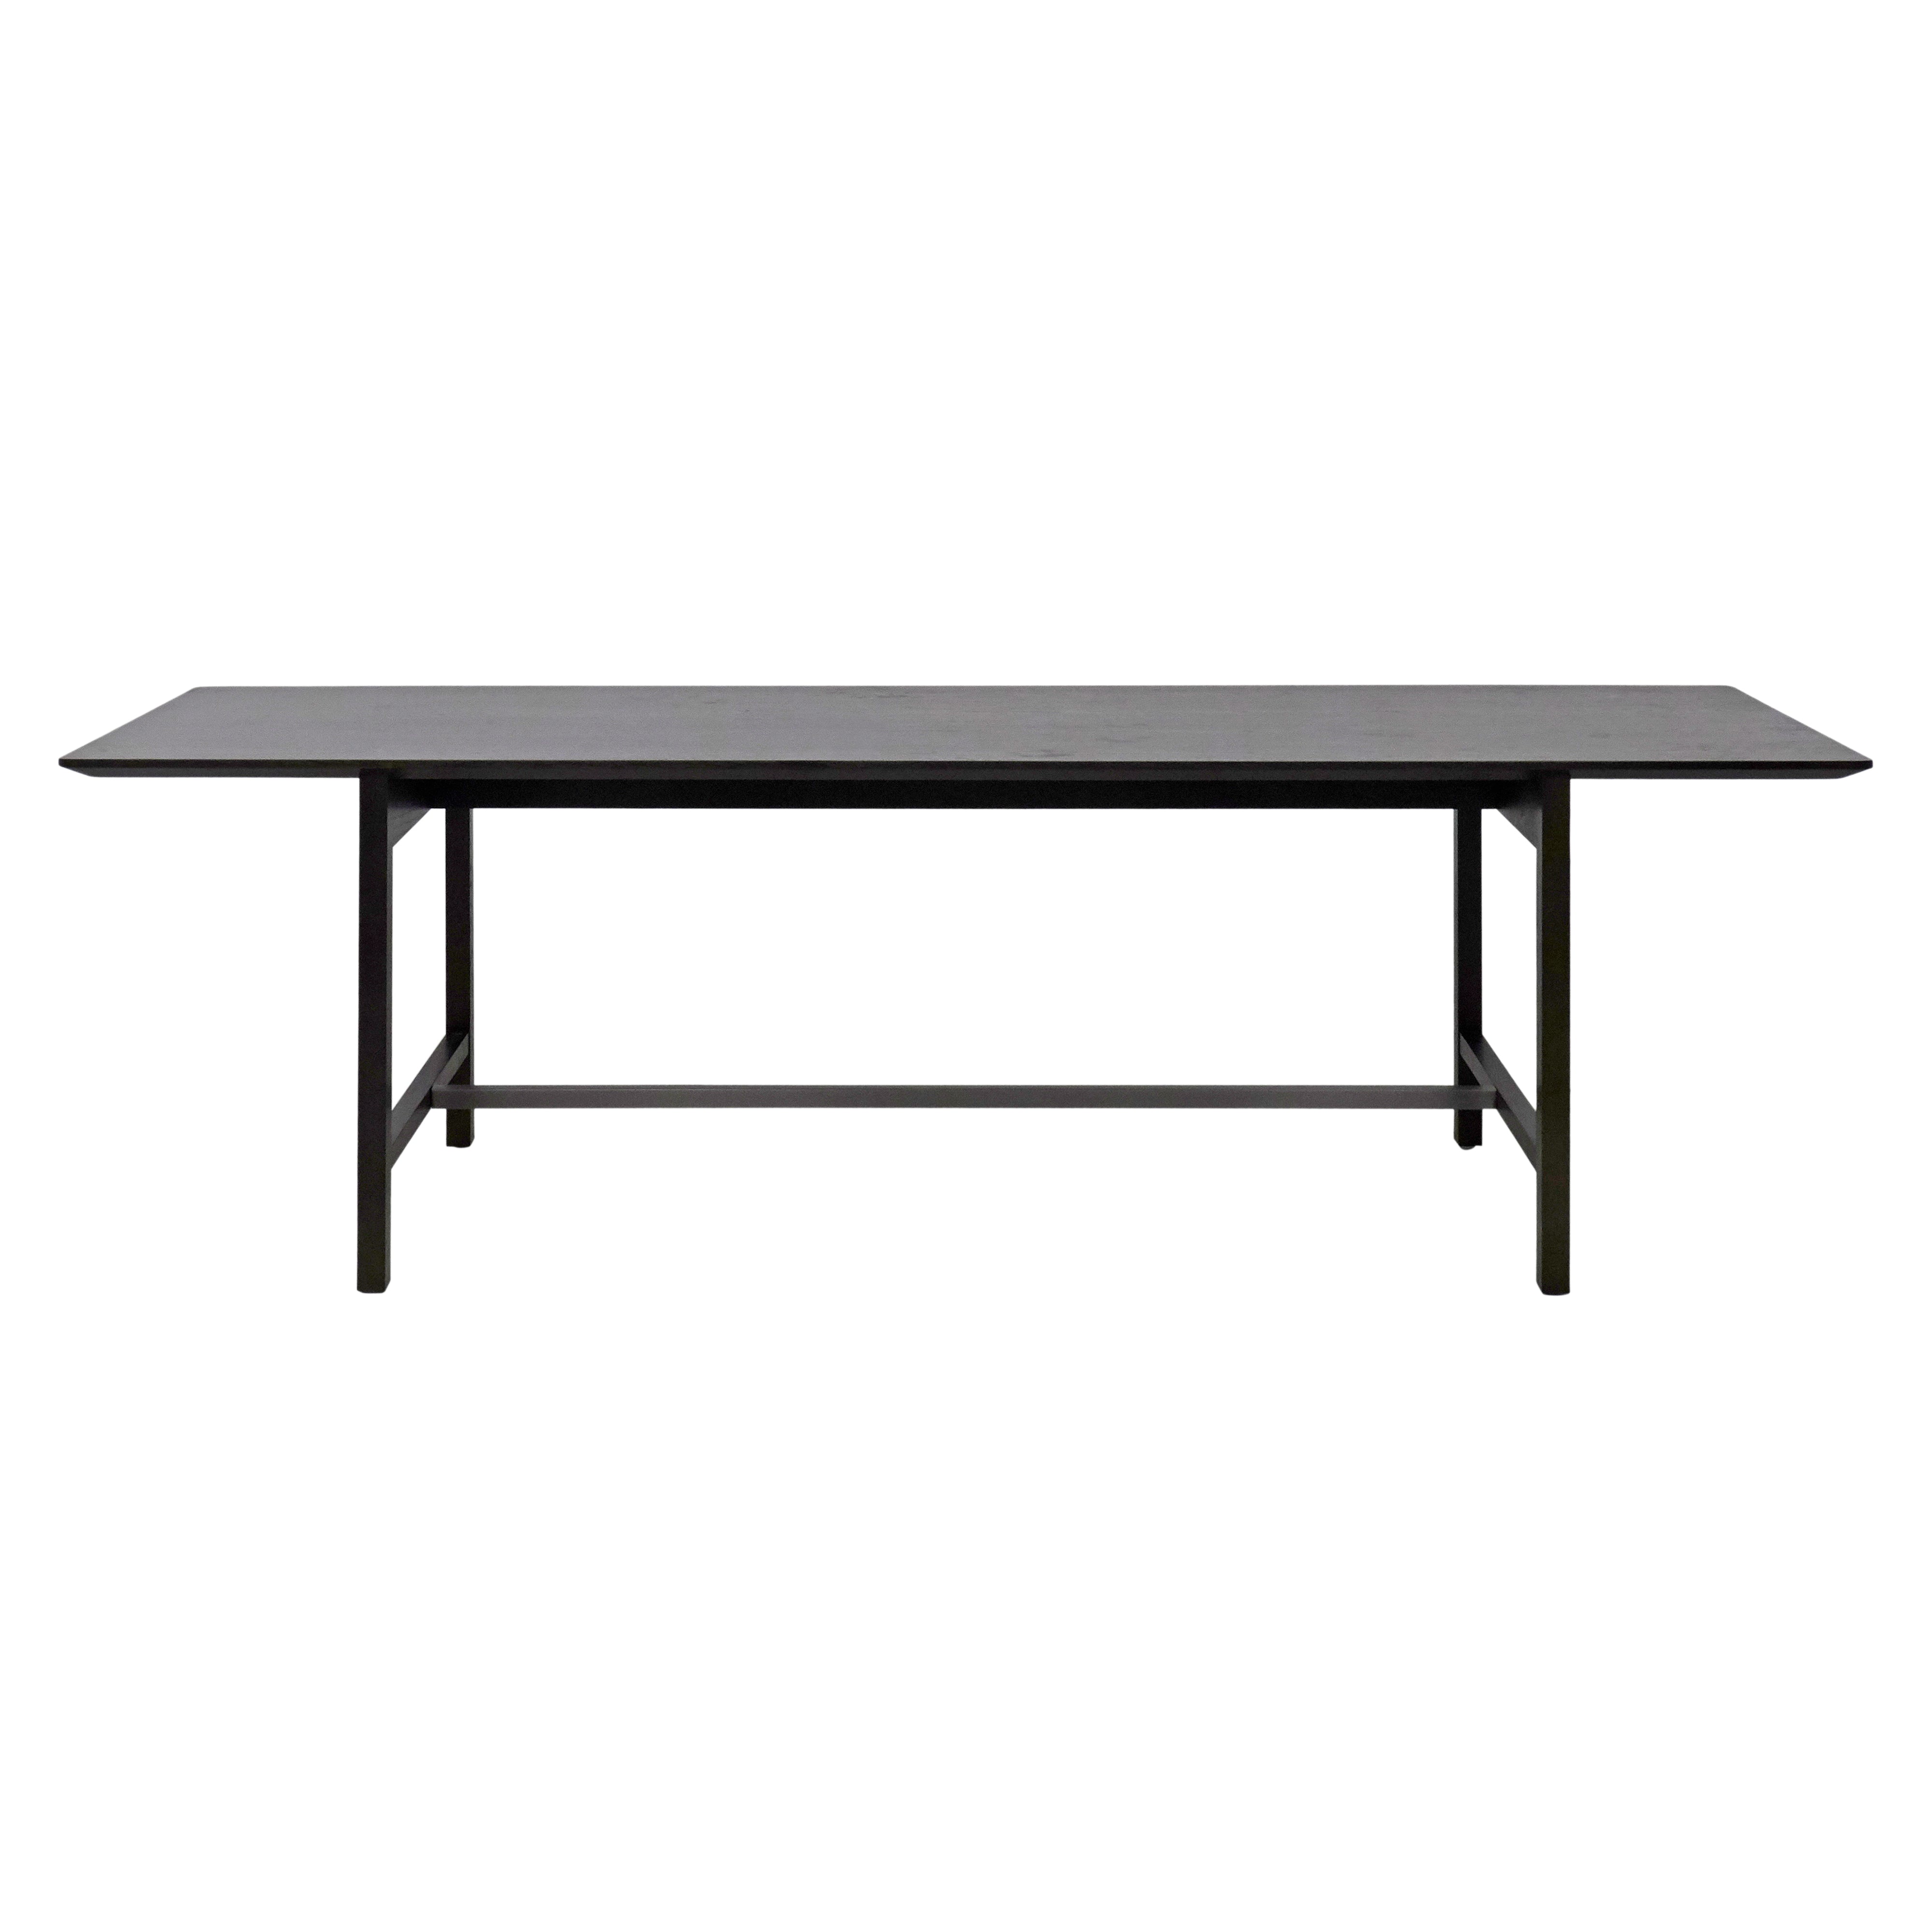 Aya Dining Table: Large - 94.5